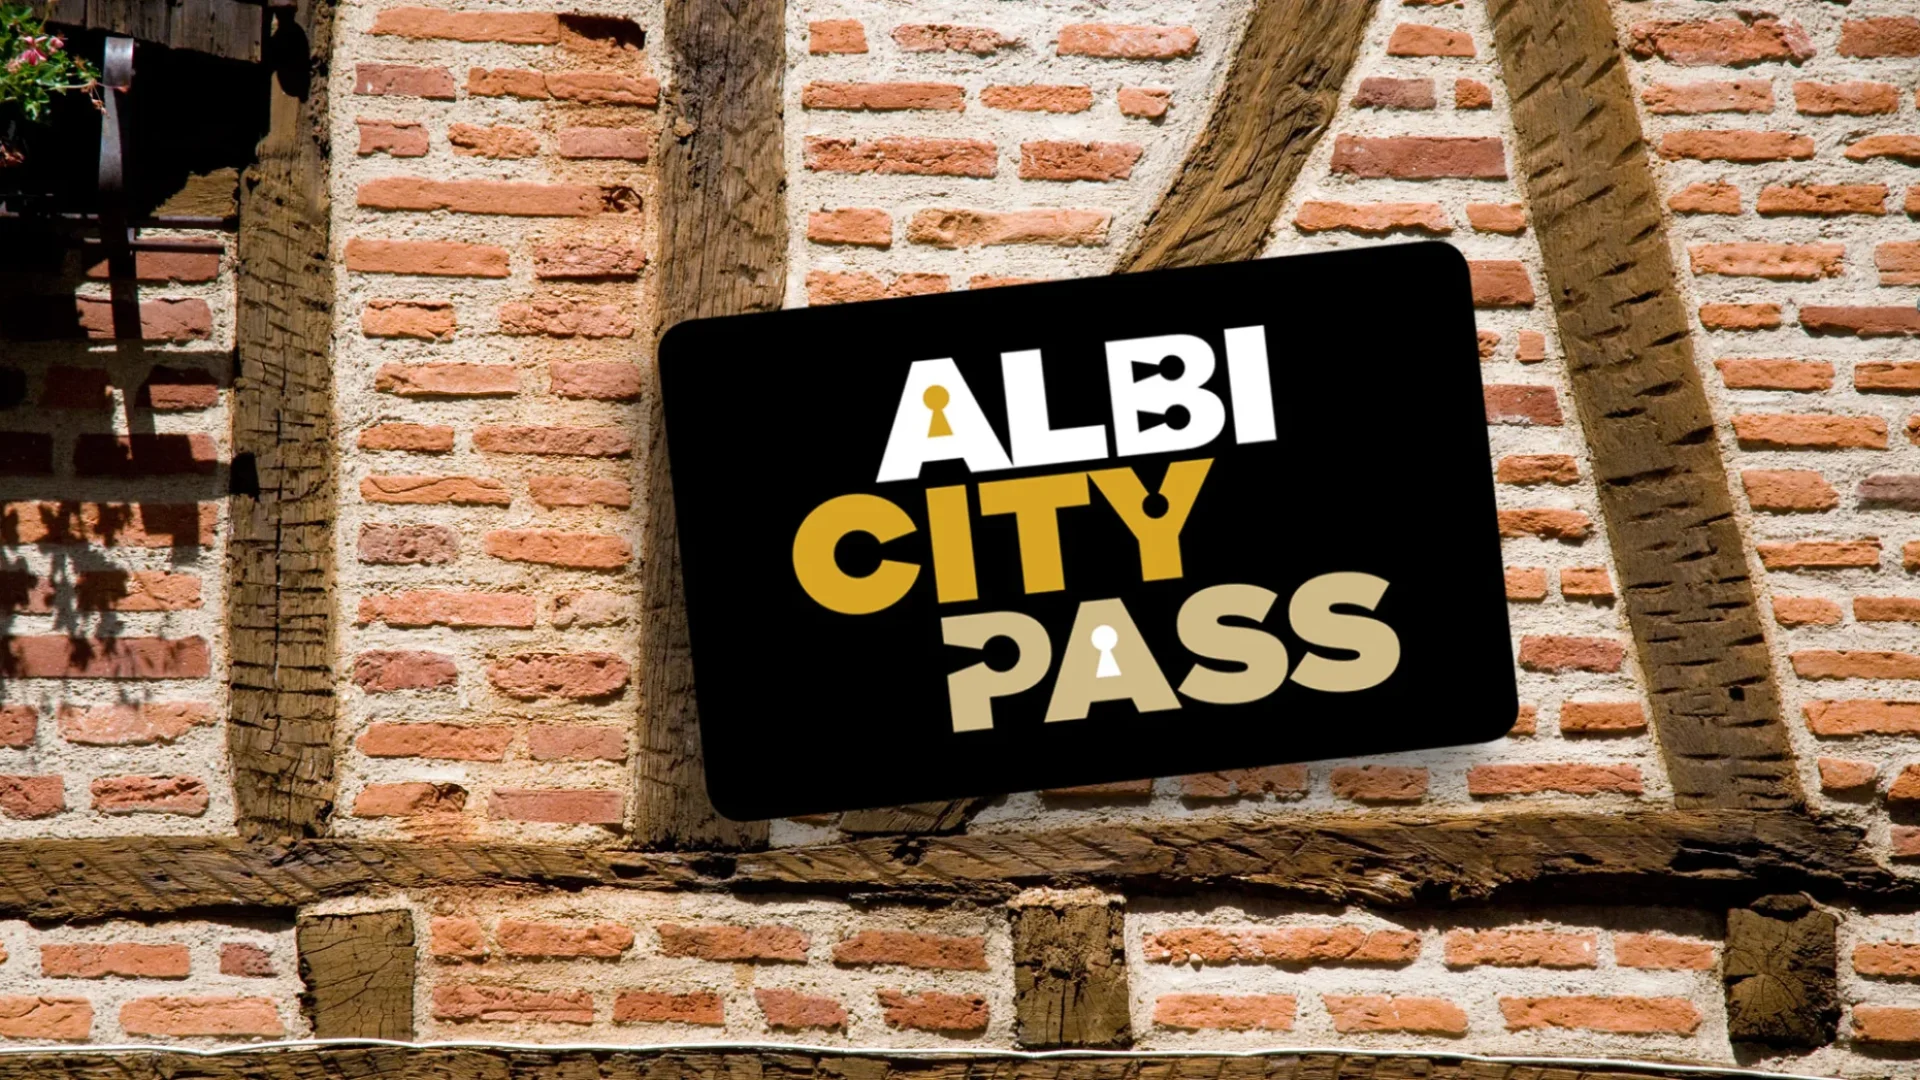 Albi city pass ; le pass tourisme indispensable à la visite